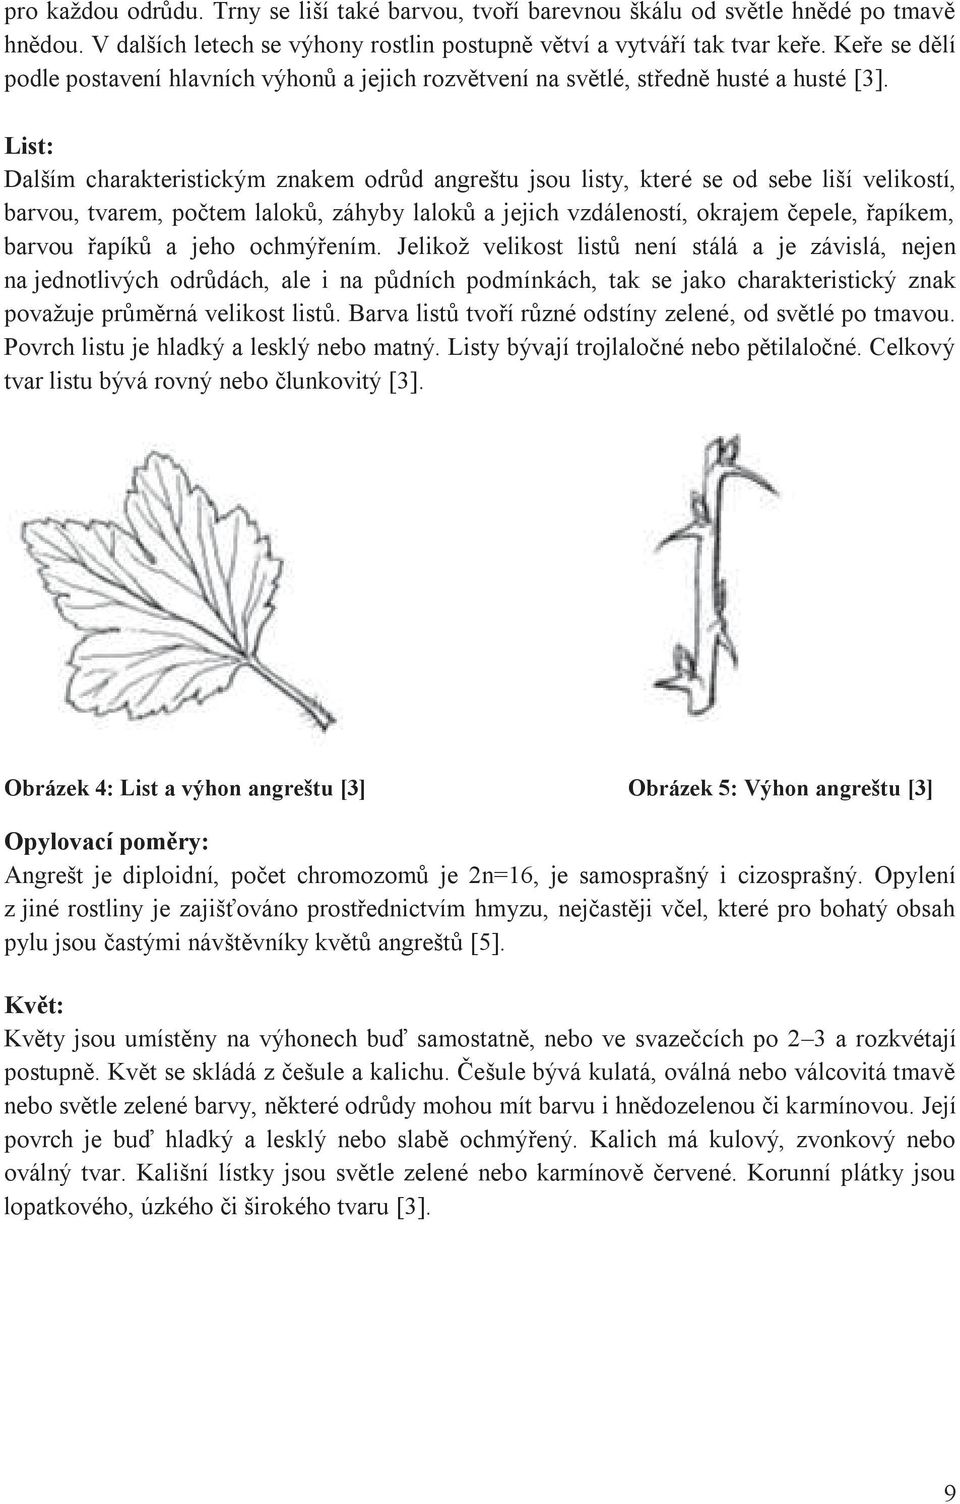 List: Dalším charakteristickým znakem odrůd angreštu jsou listy, které se od sebe liší velikostí, barvou, tvarem, počtem laloků, záhyby laloků a jejich vzdáleností, okrajem čepele, řapíkem, barvou